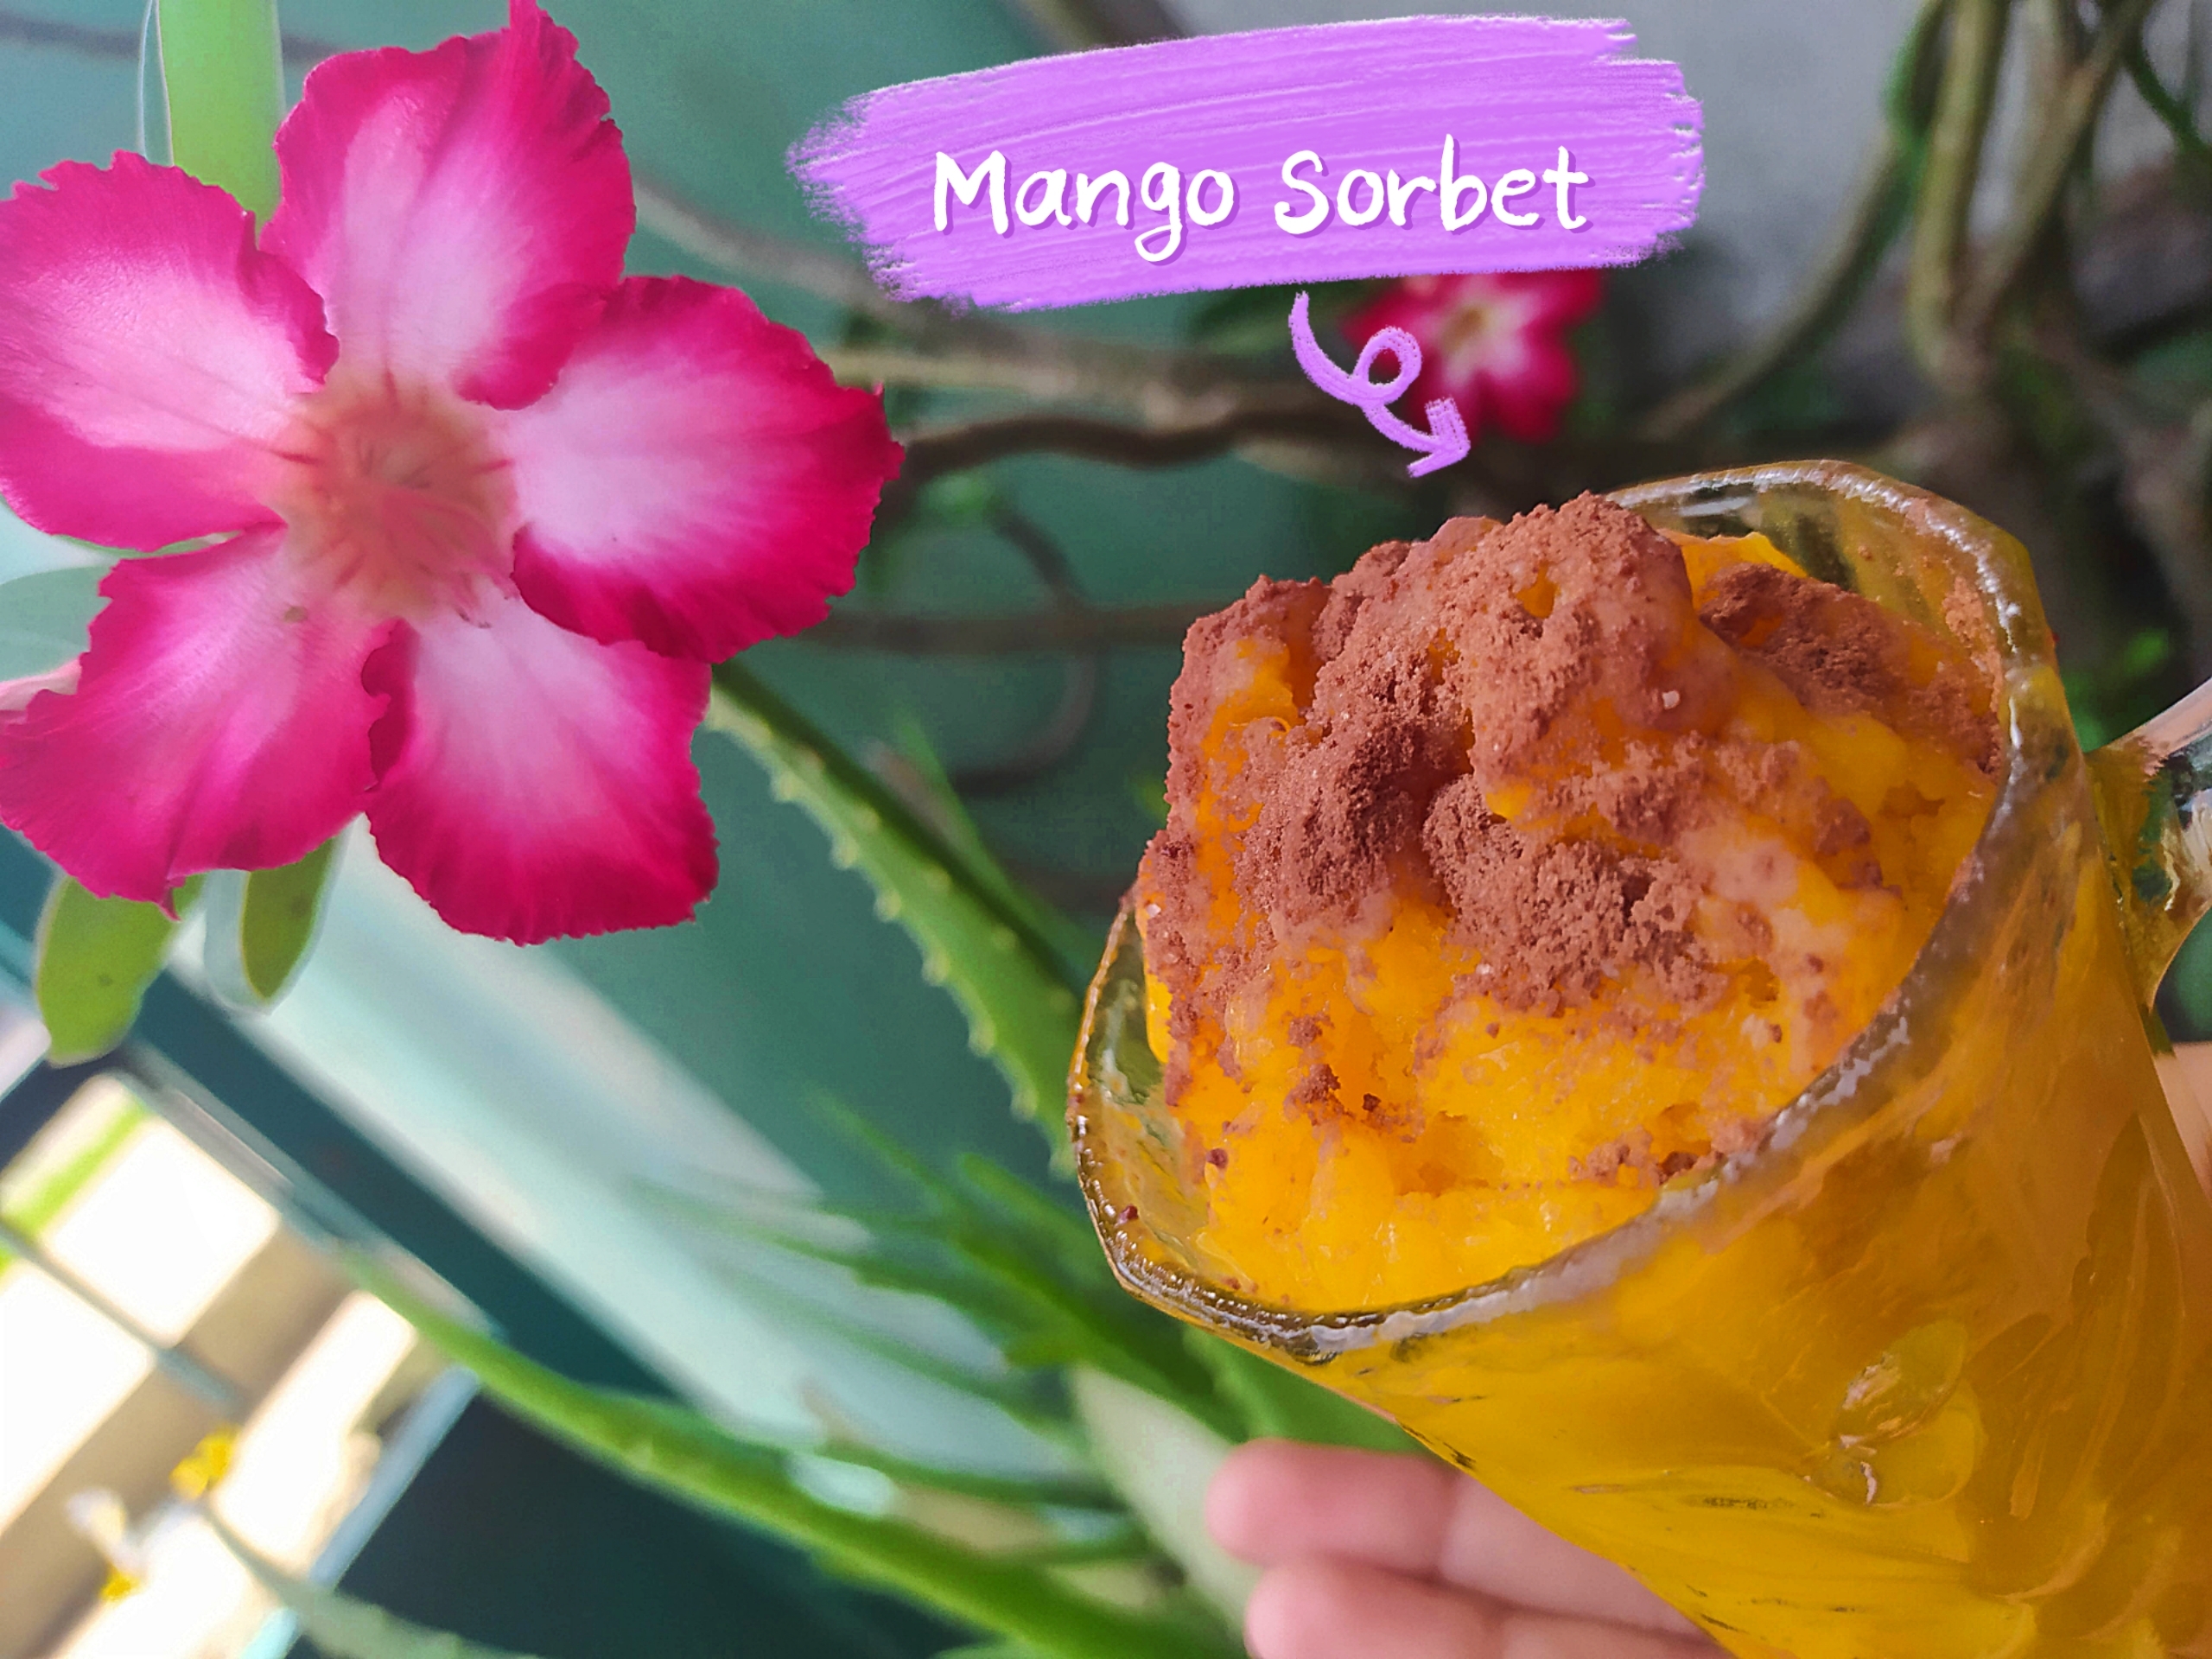 Mango Sorbet by Isnaini Umi Sakinah 2